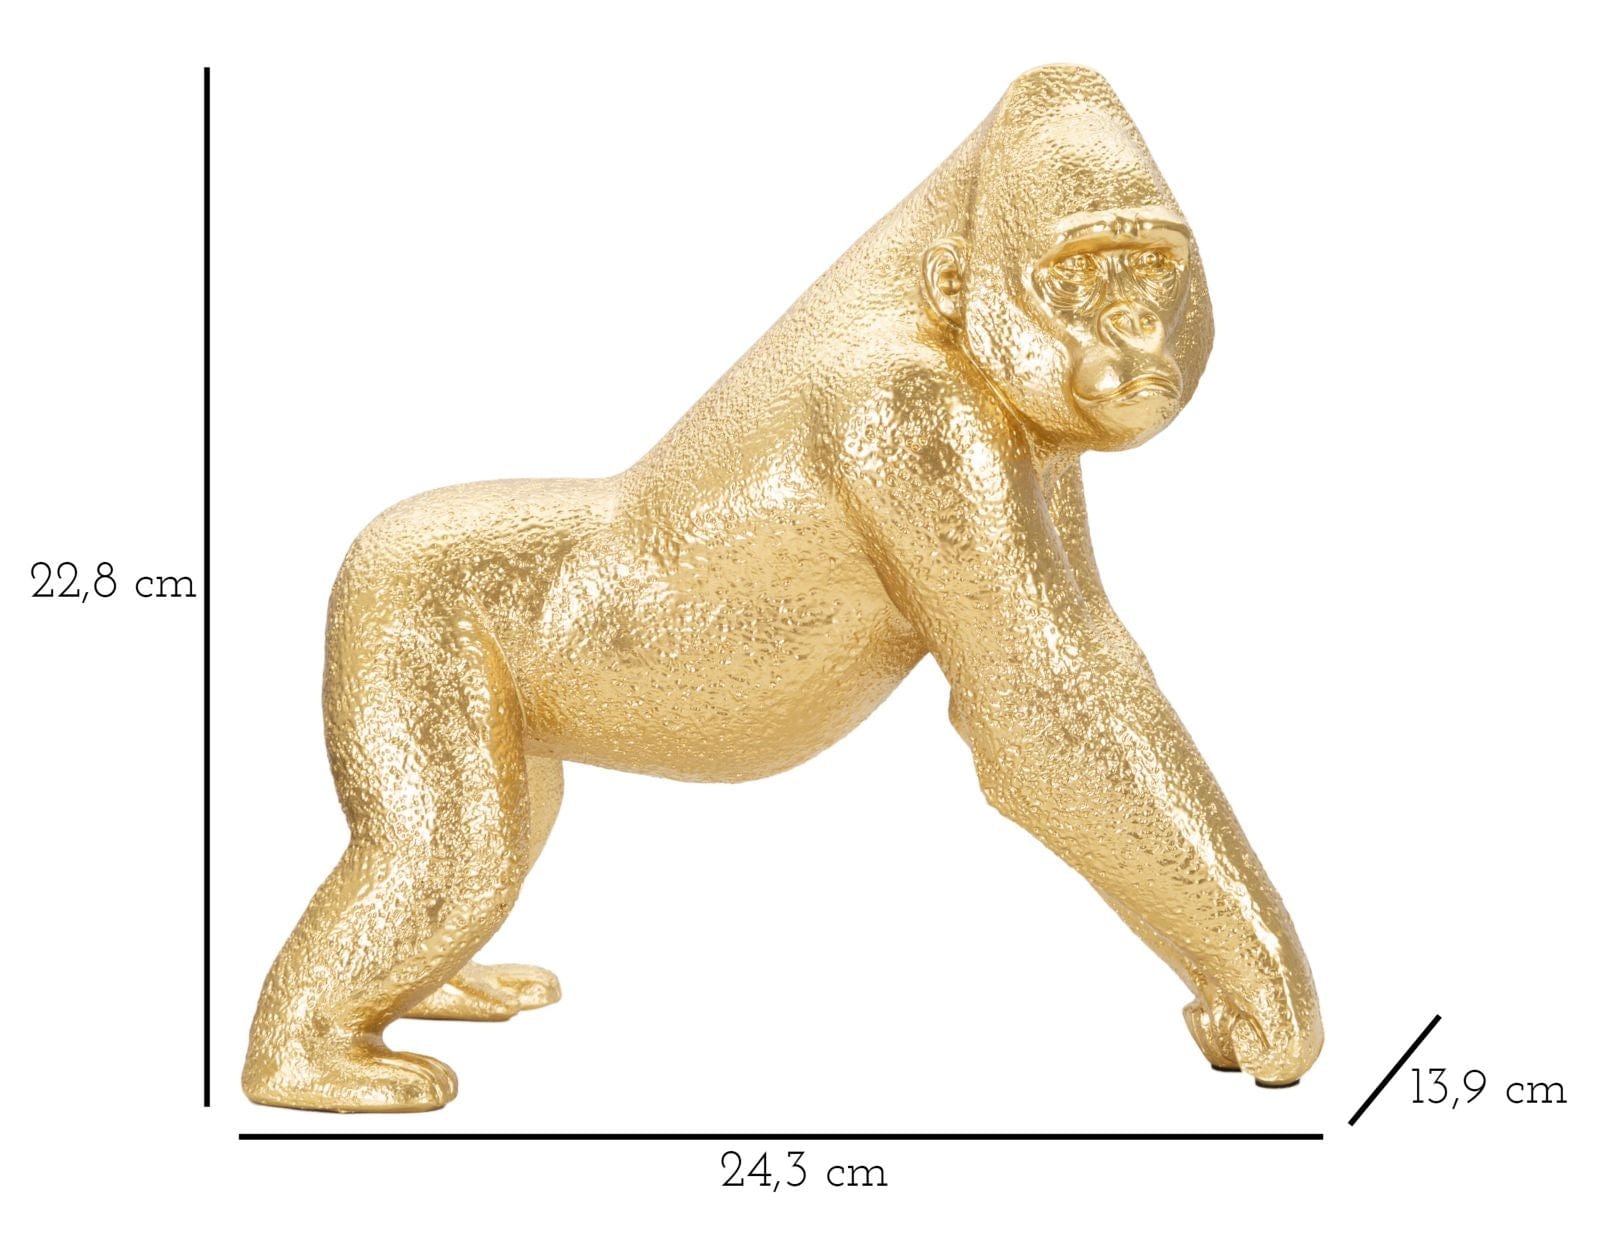 Decoratiune din rasina Gorilla Side Auriu, L24,3xl13,9xH22,8 cm (4)